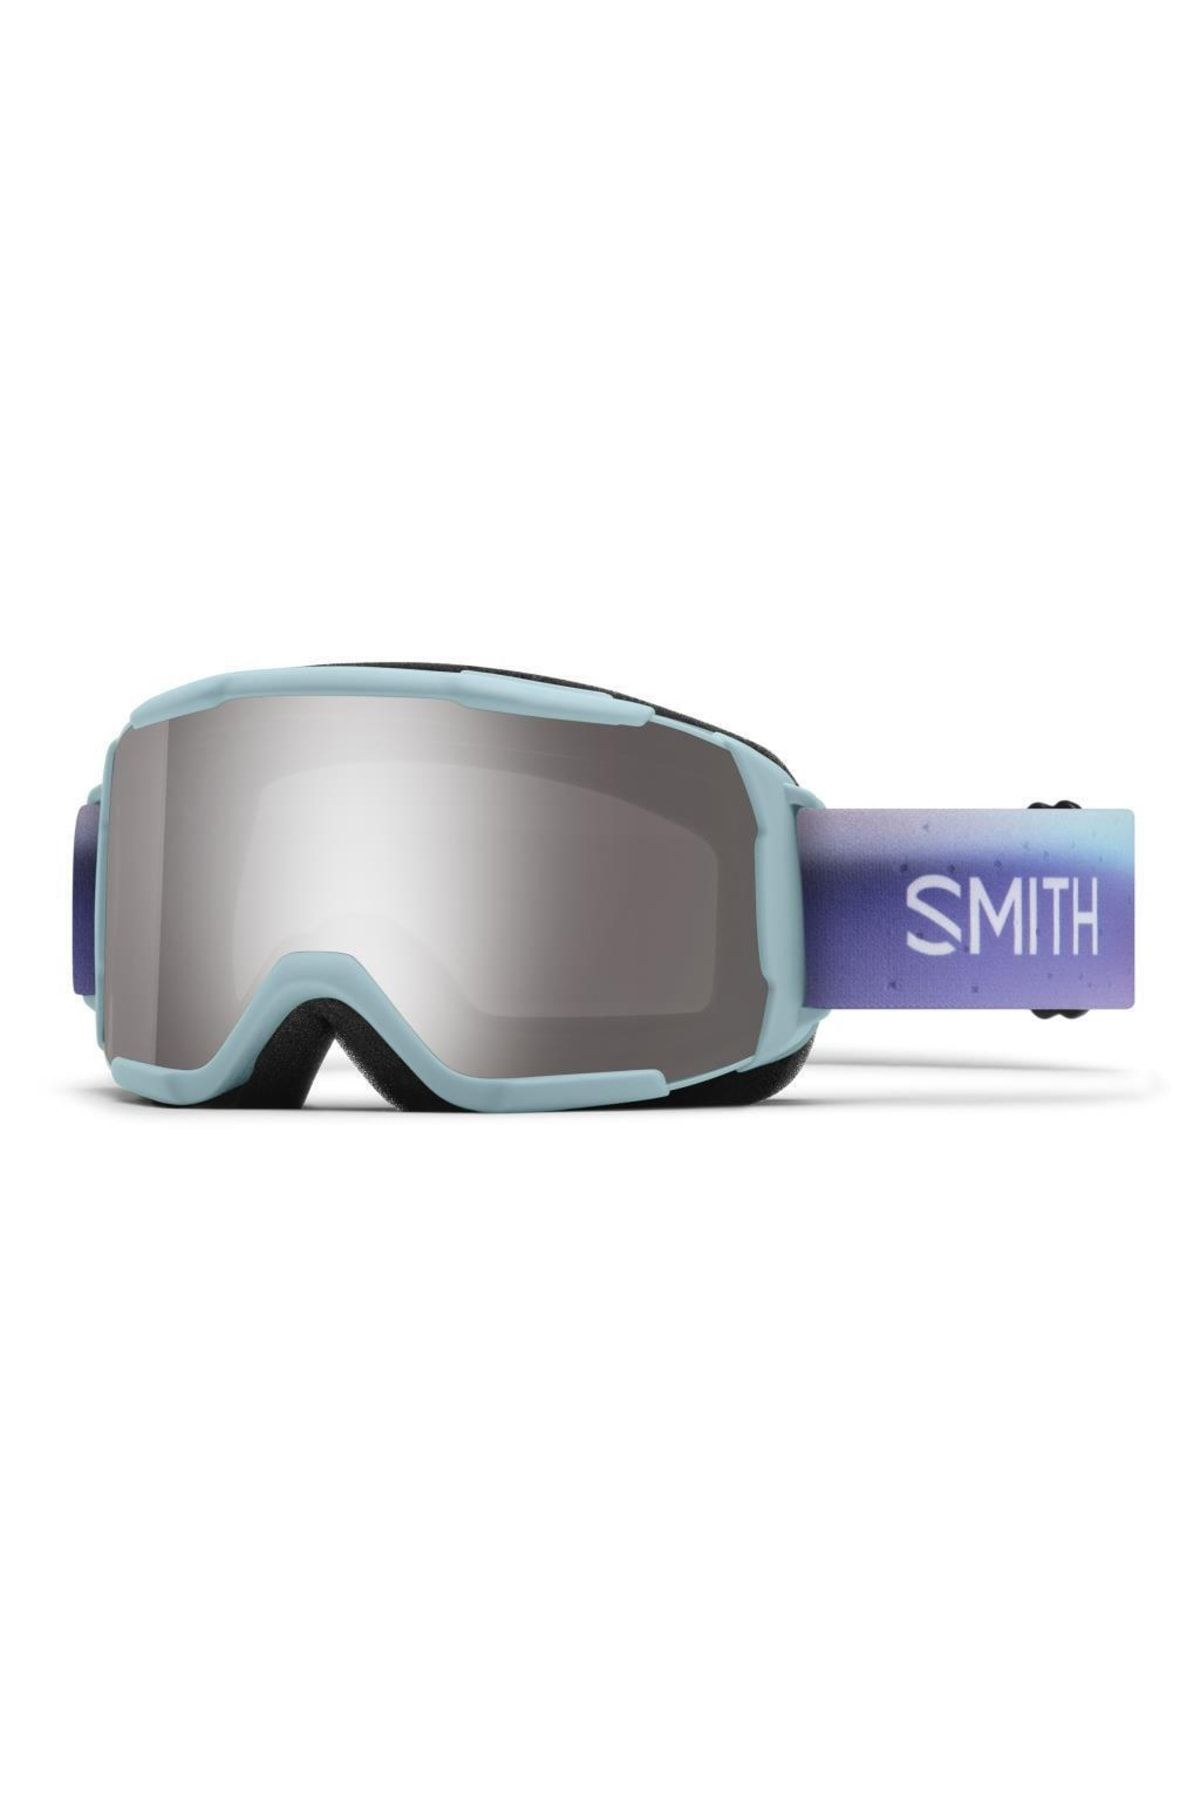 Smith Showcase Otg 6u5t S3 Kayak Gözlüğü